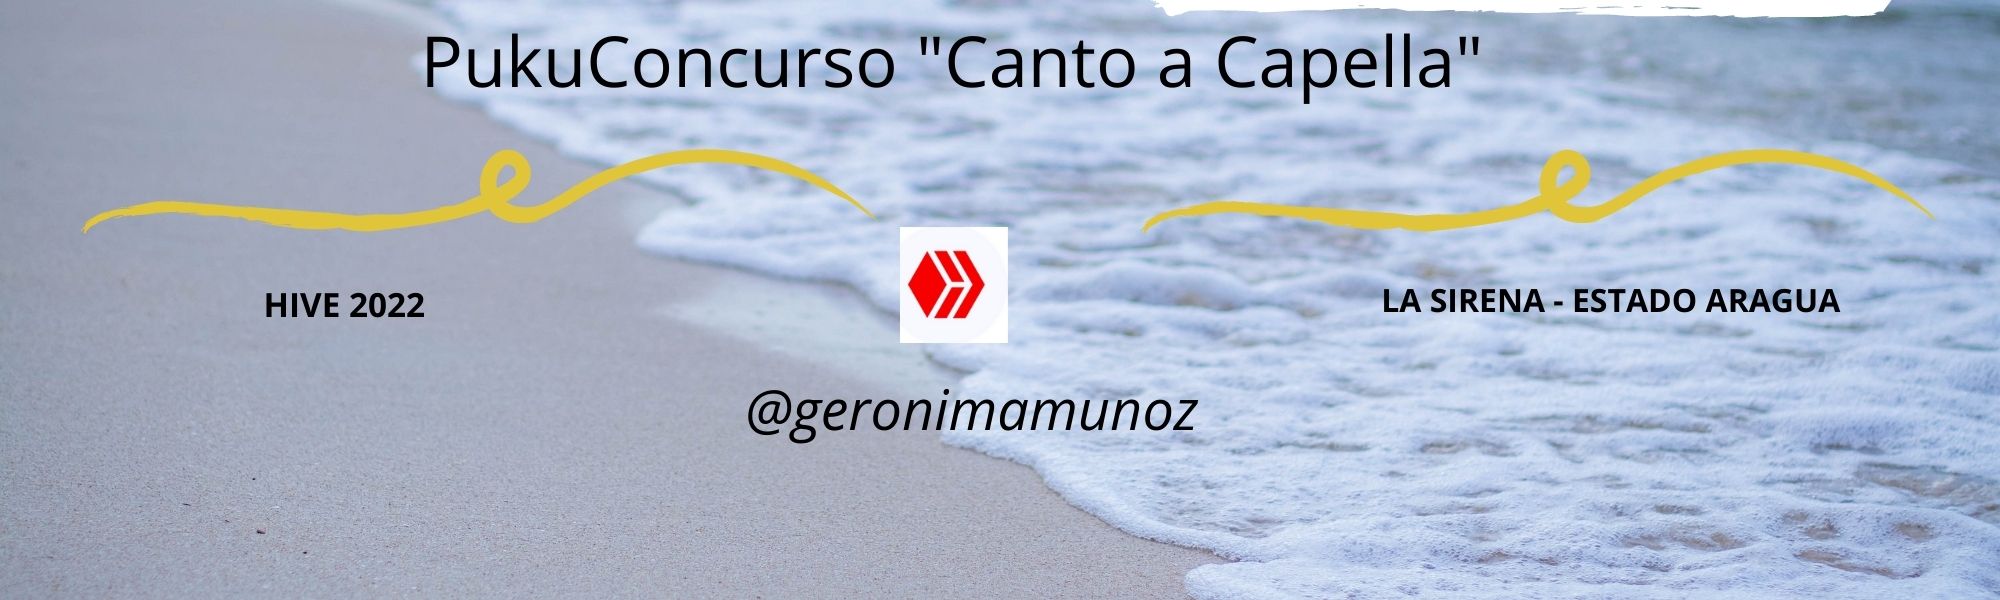 PukuConcurso Canto a Capella.jpg